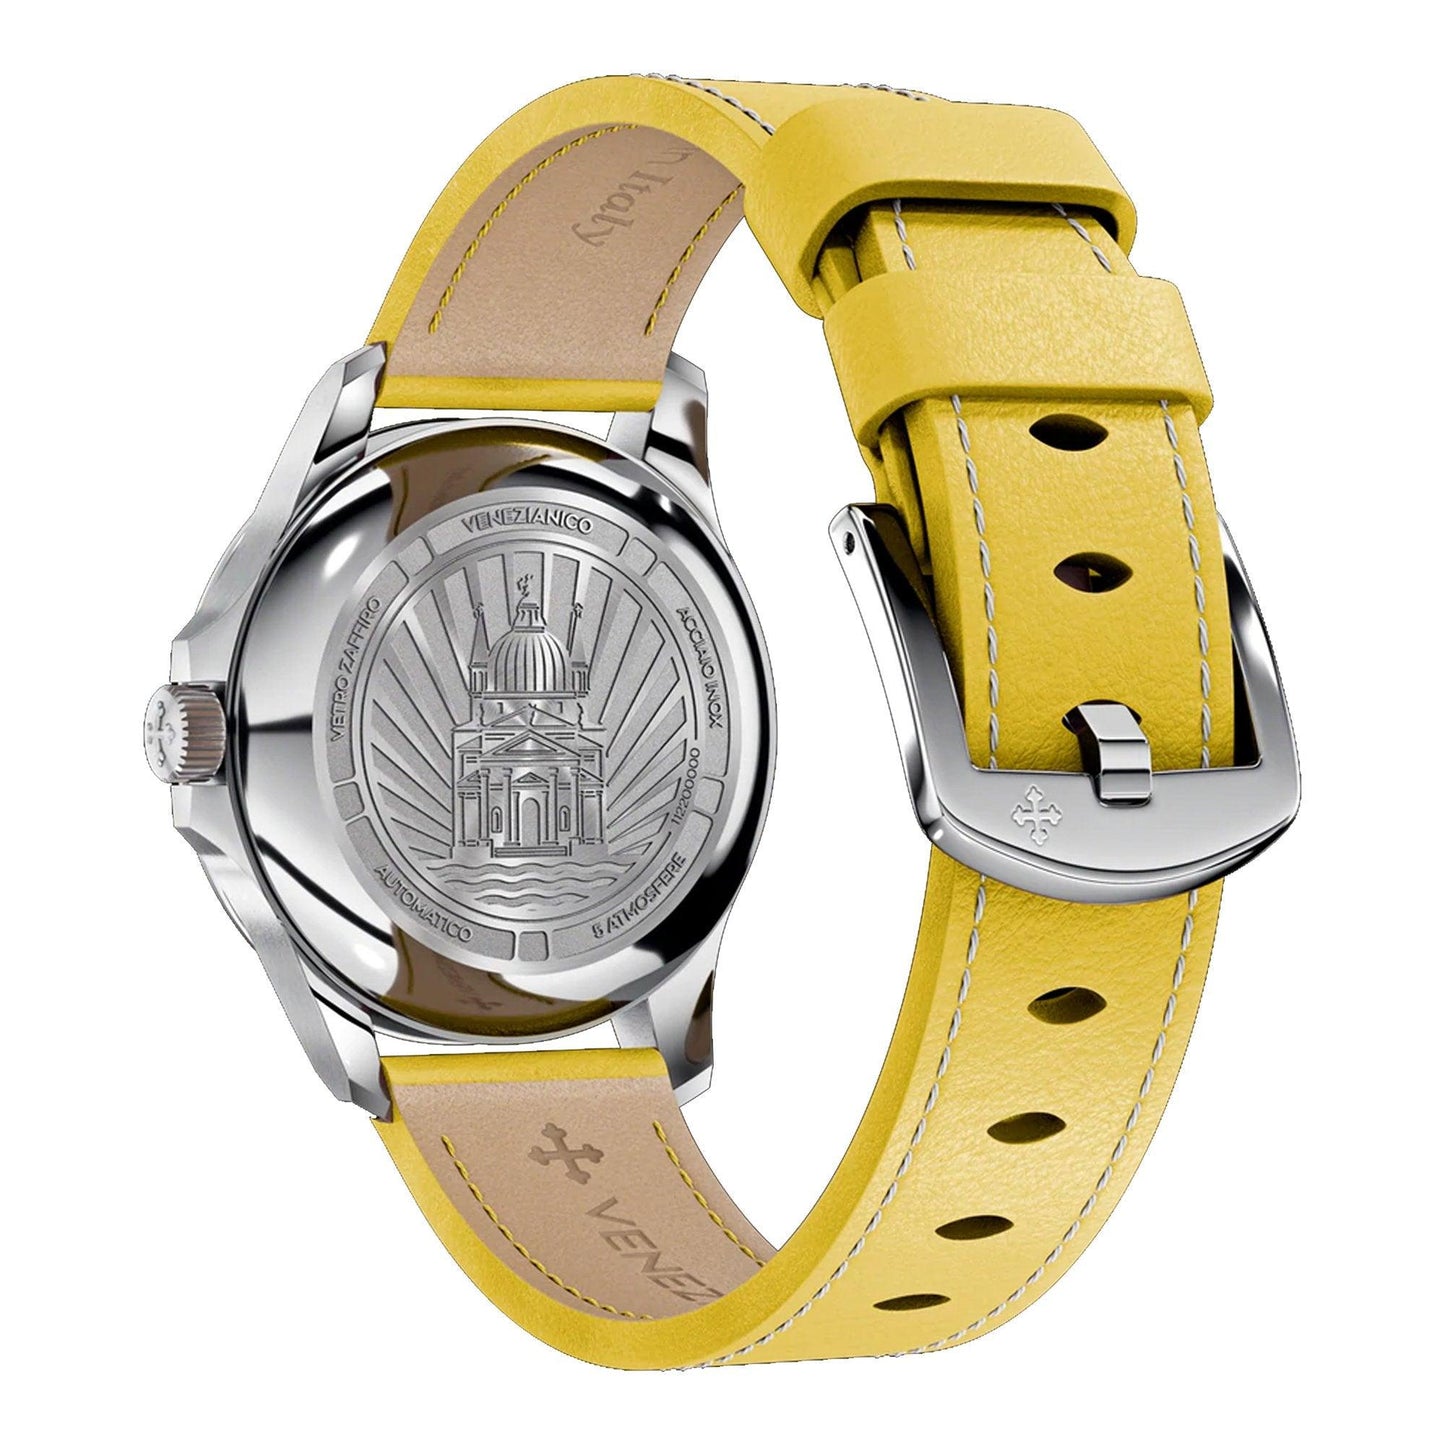 Venezianico Redentore 36 1121501 orologio donna meccanico - Kechiq Concept Boutique